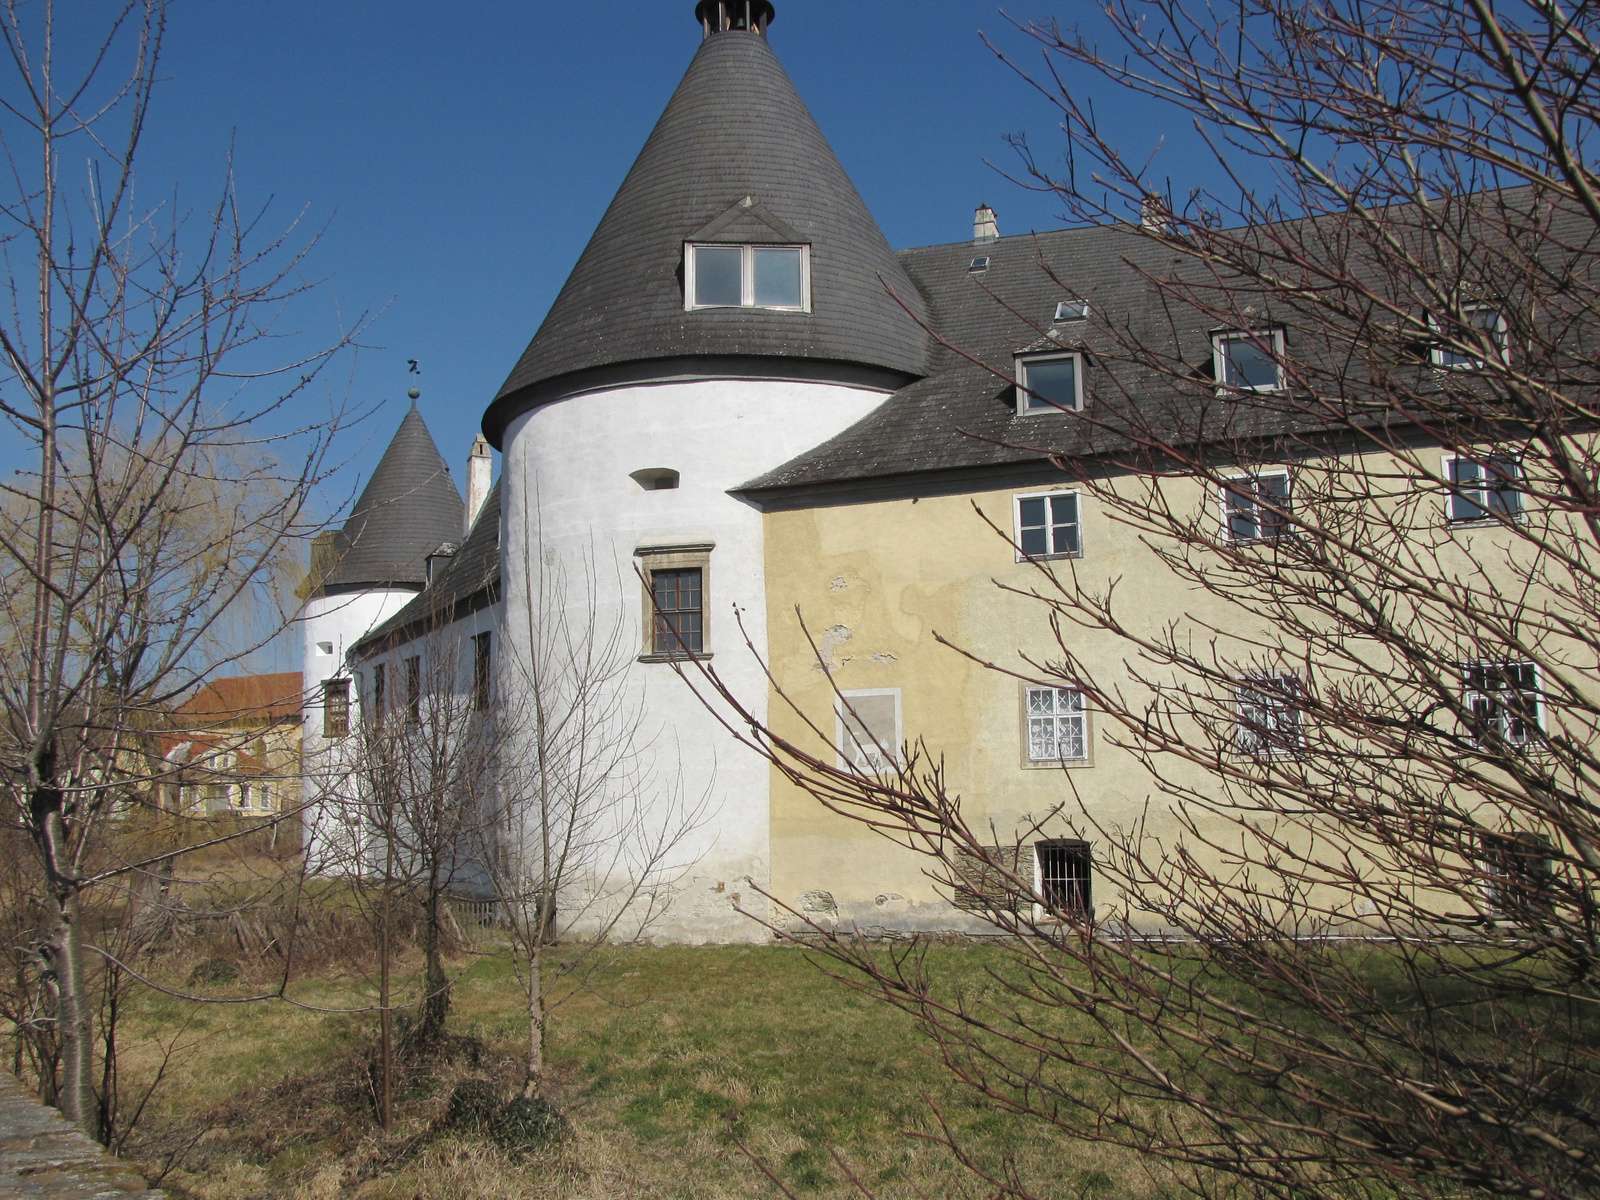 Kobersdorf (Kabold), a vár, SzG3